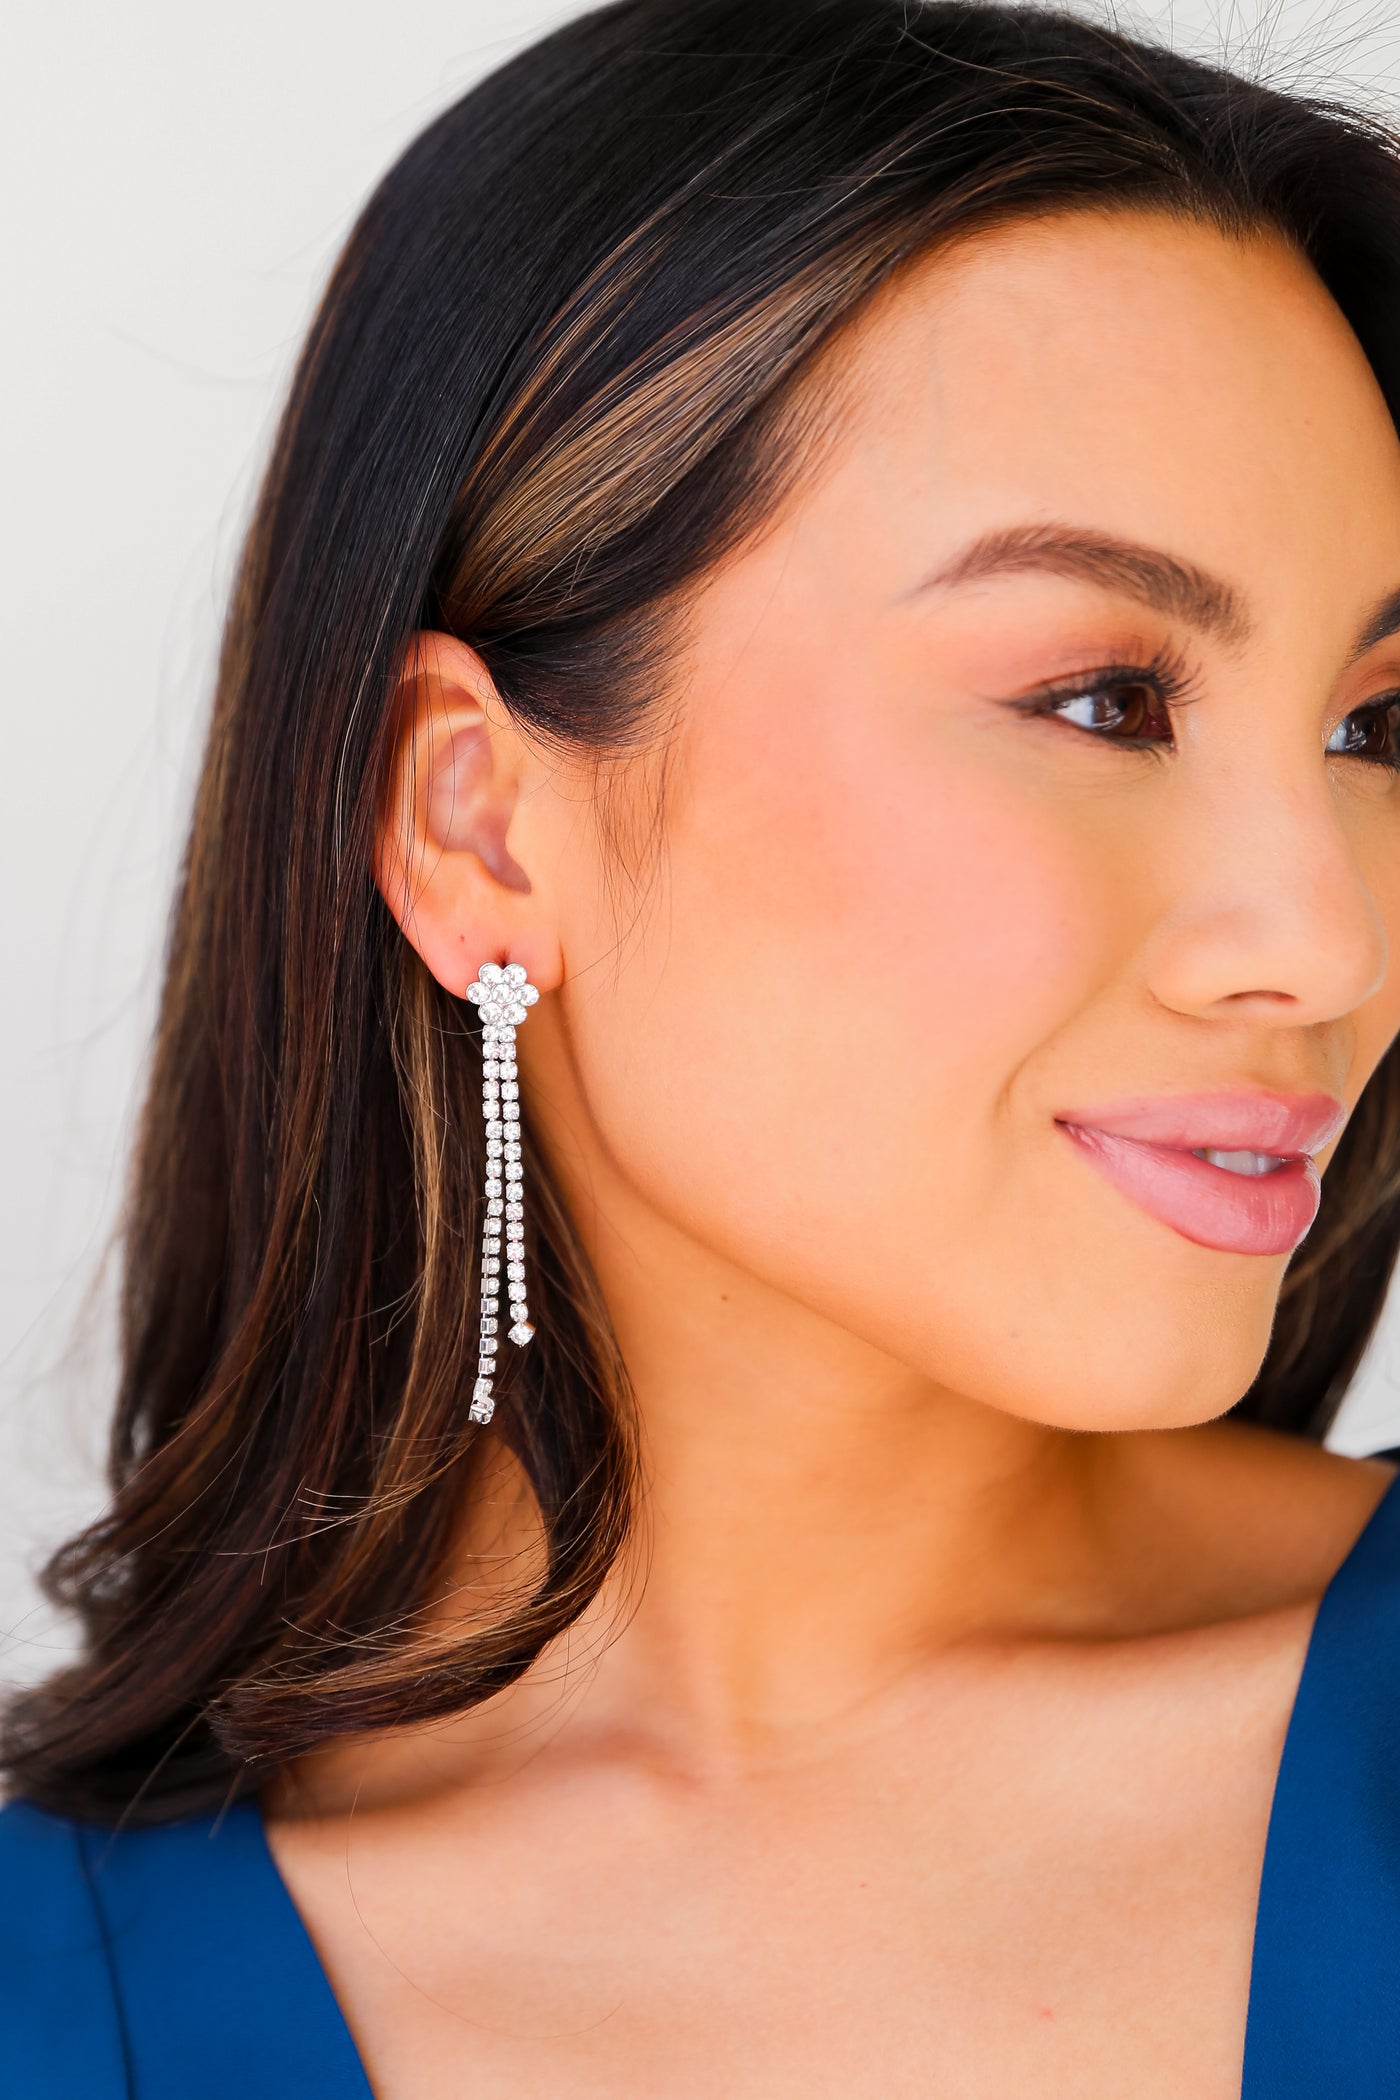 cute earrings for women